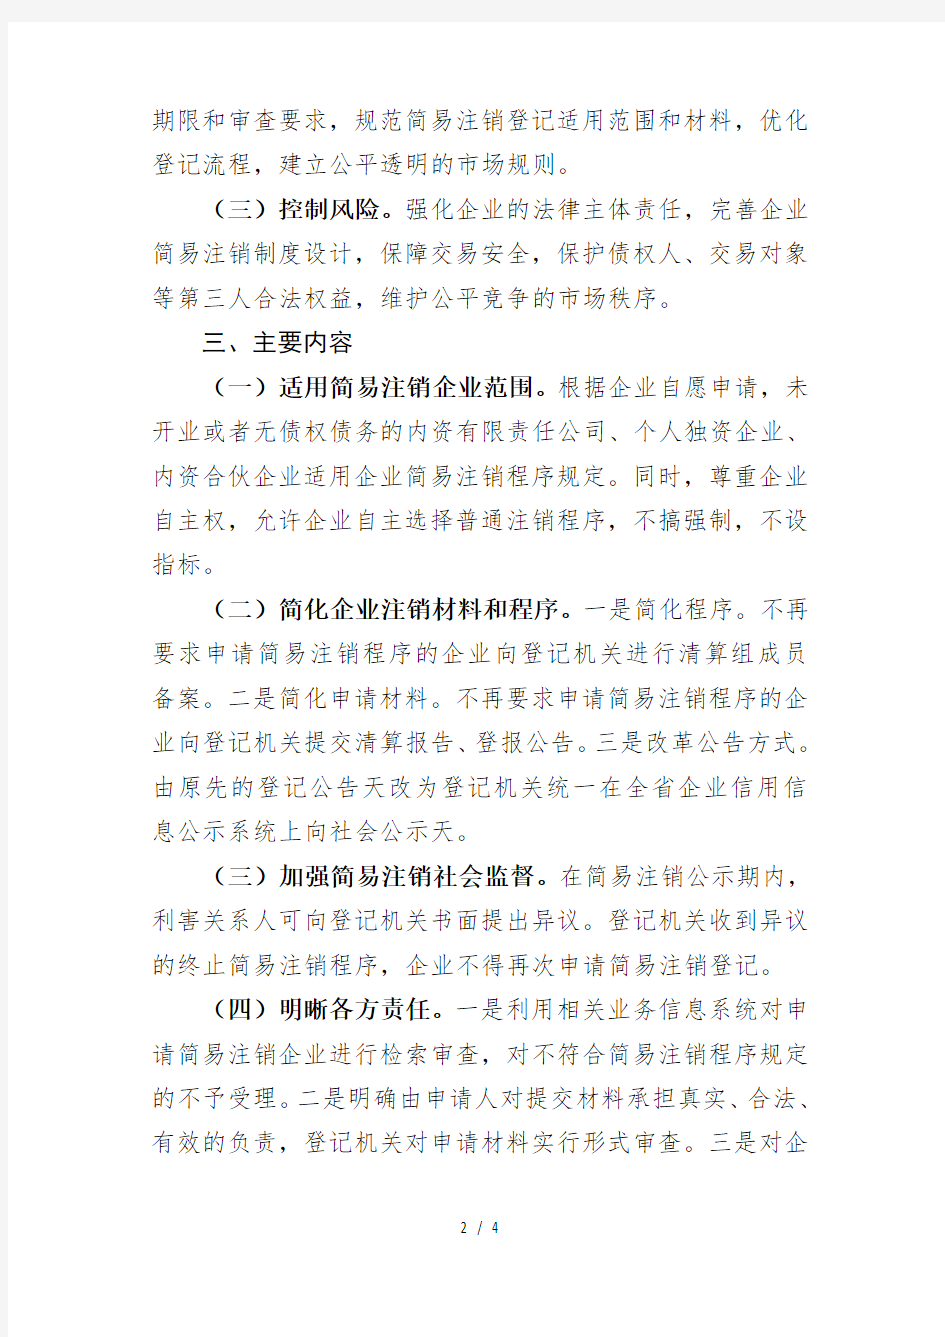 辽宁省工商行政管理局企业简易注销改革实施方案